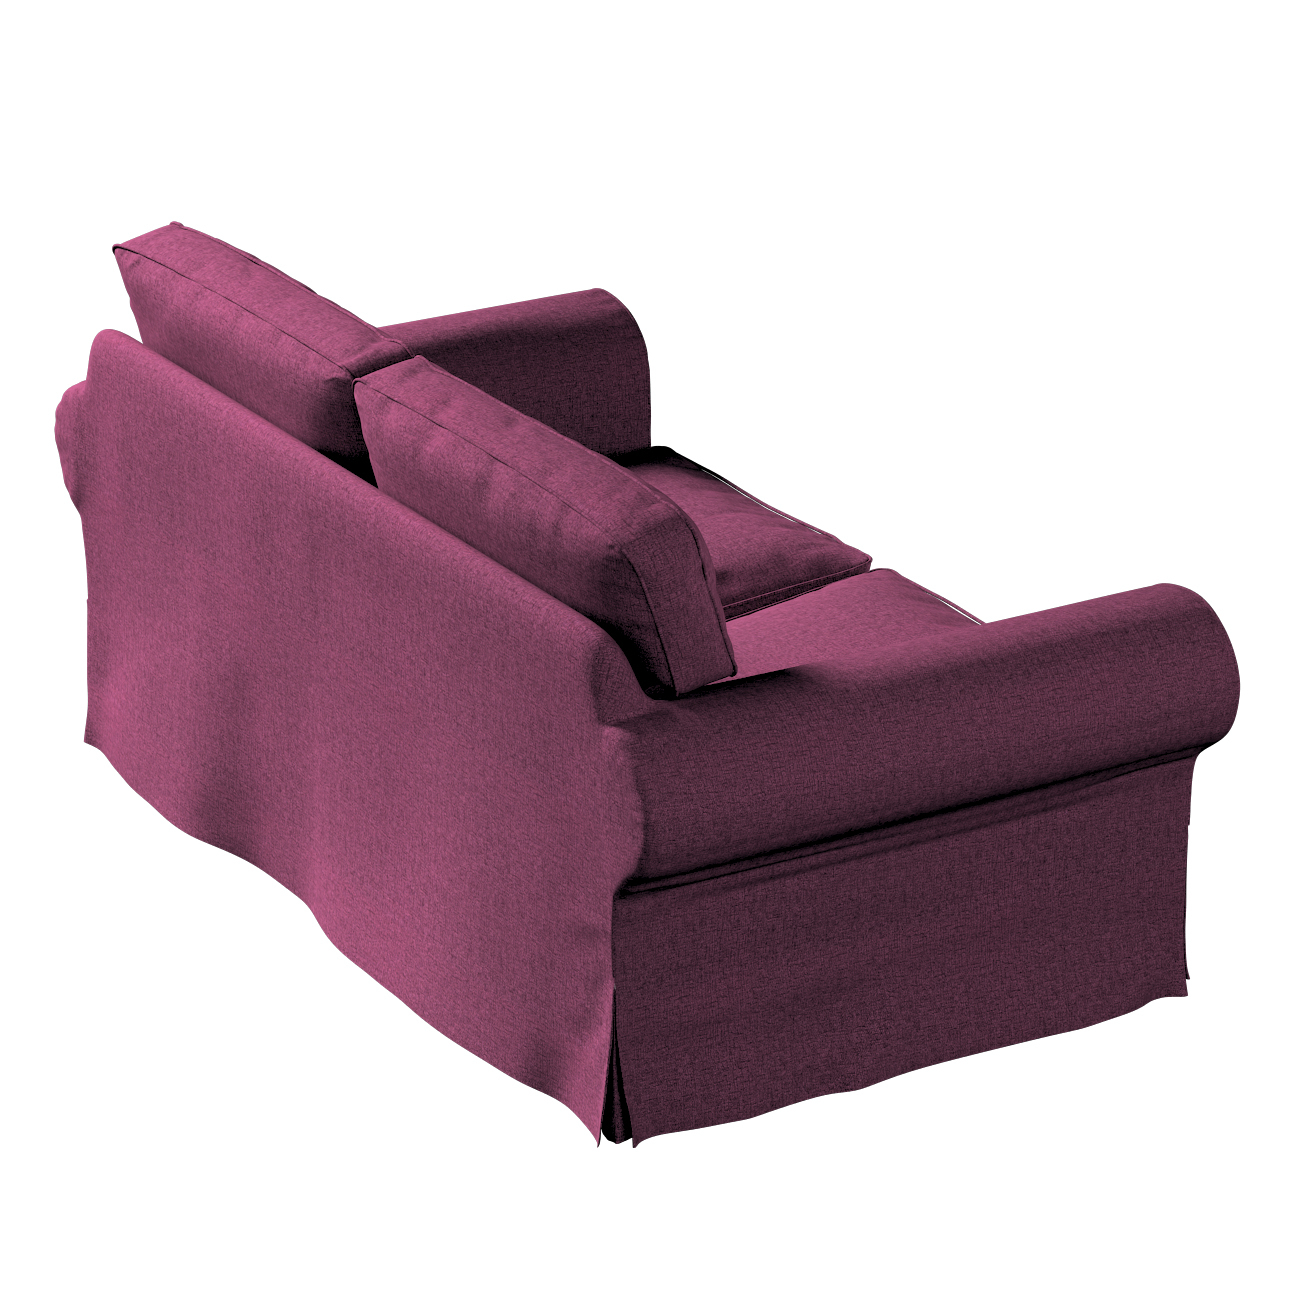 Bezug für Ektorp 2-Sitzer Schlafsofa ALTES Modell, pflaumenviolett, Sofabez günstig online kaufen